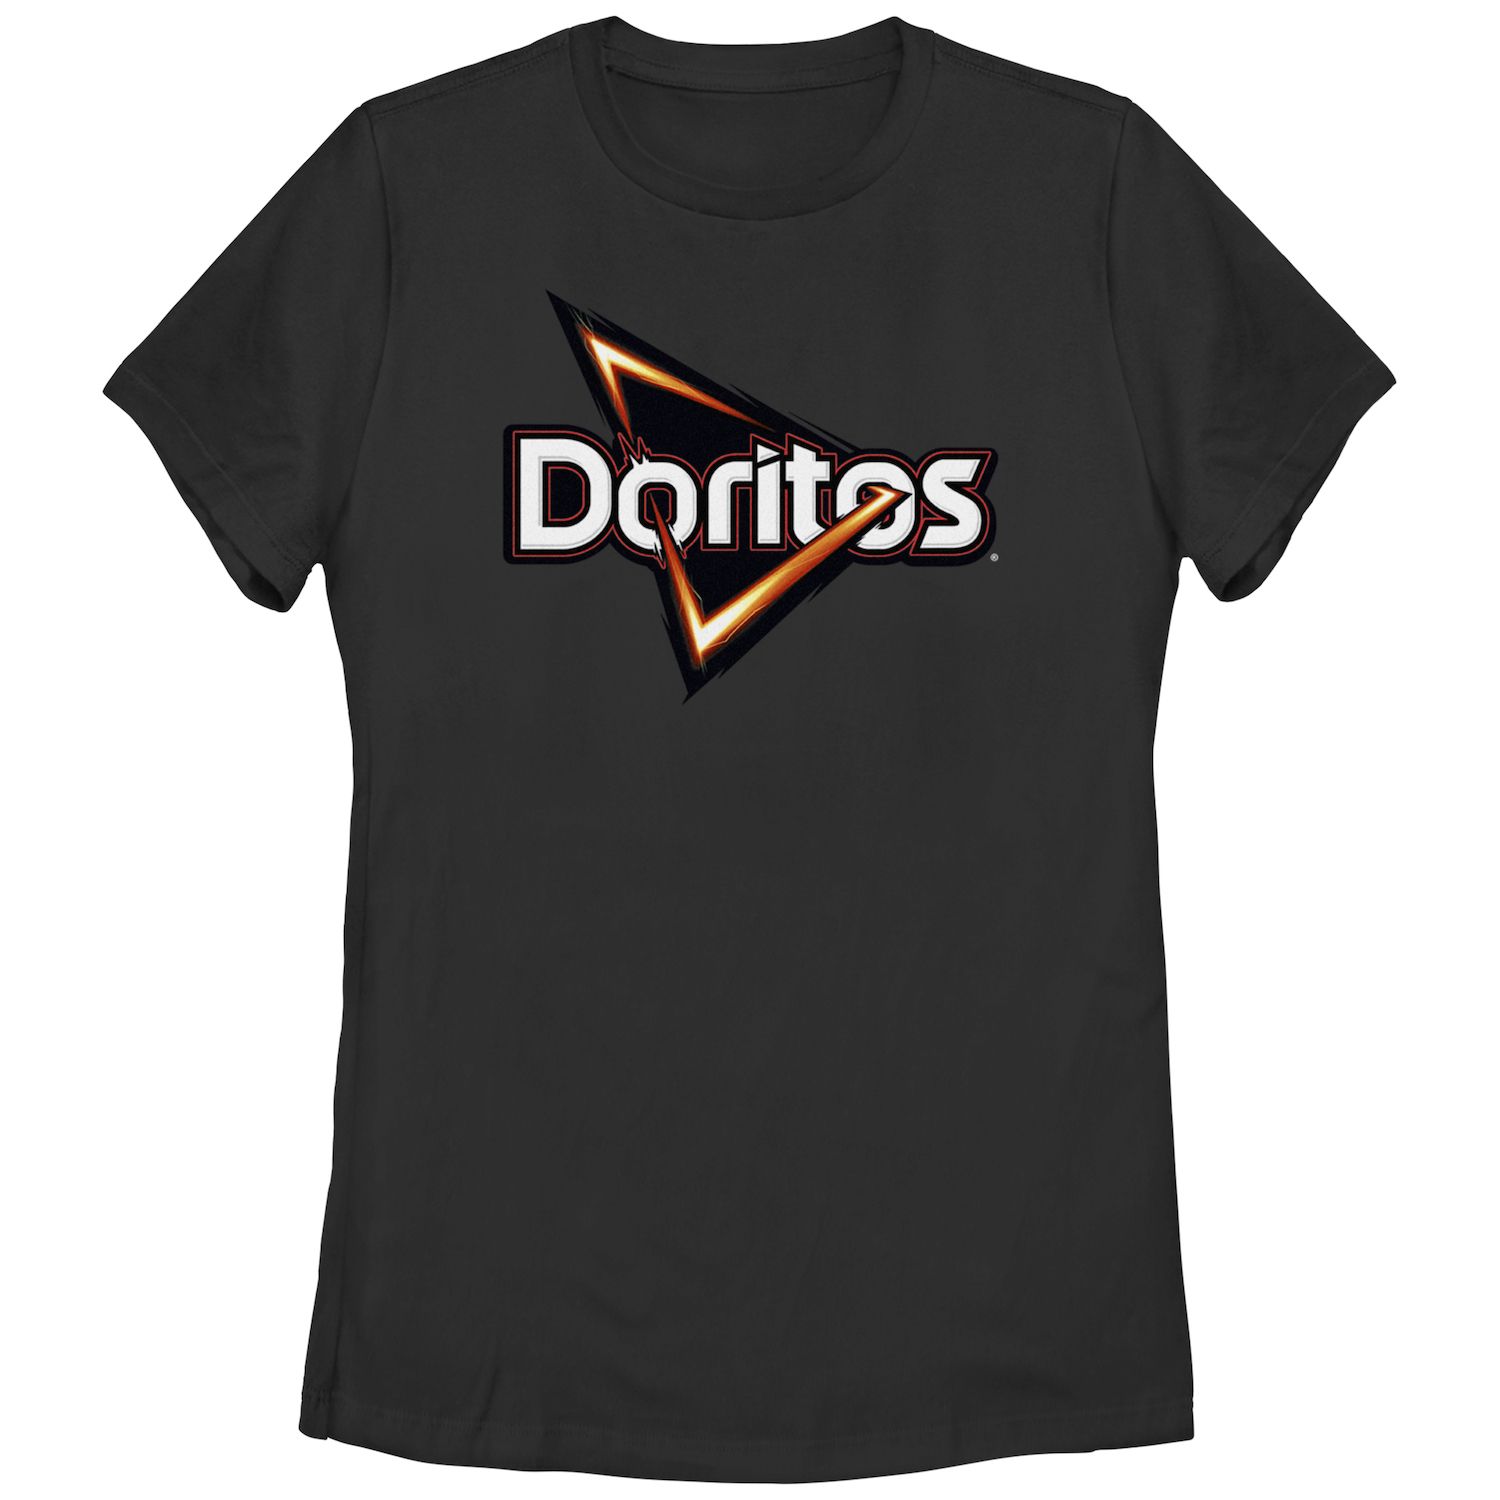 Классическая футболка с логотипом и графическим рисунком Doritos Triangle Chips для юниоров Doritos doritos кукурузные чипсы doritos паприка 100г